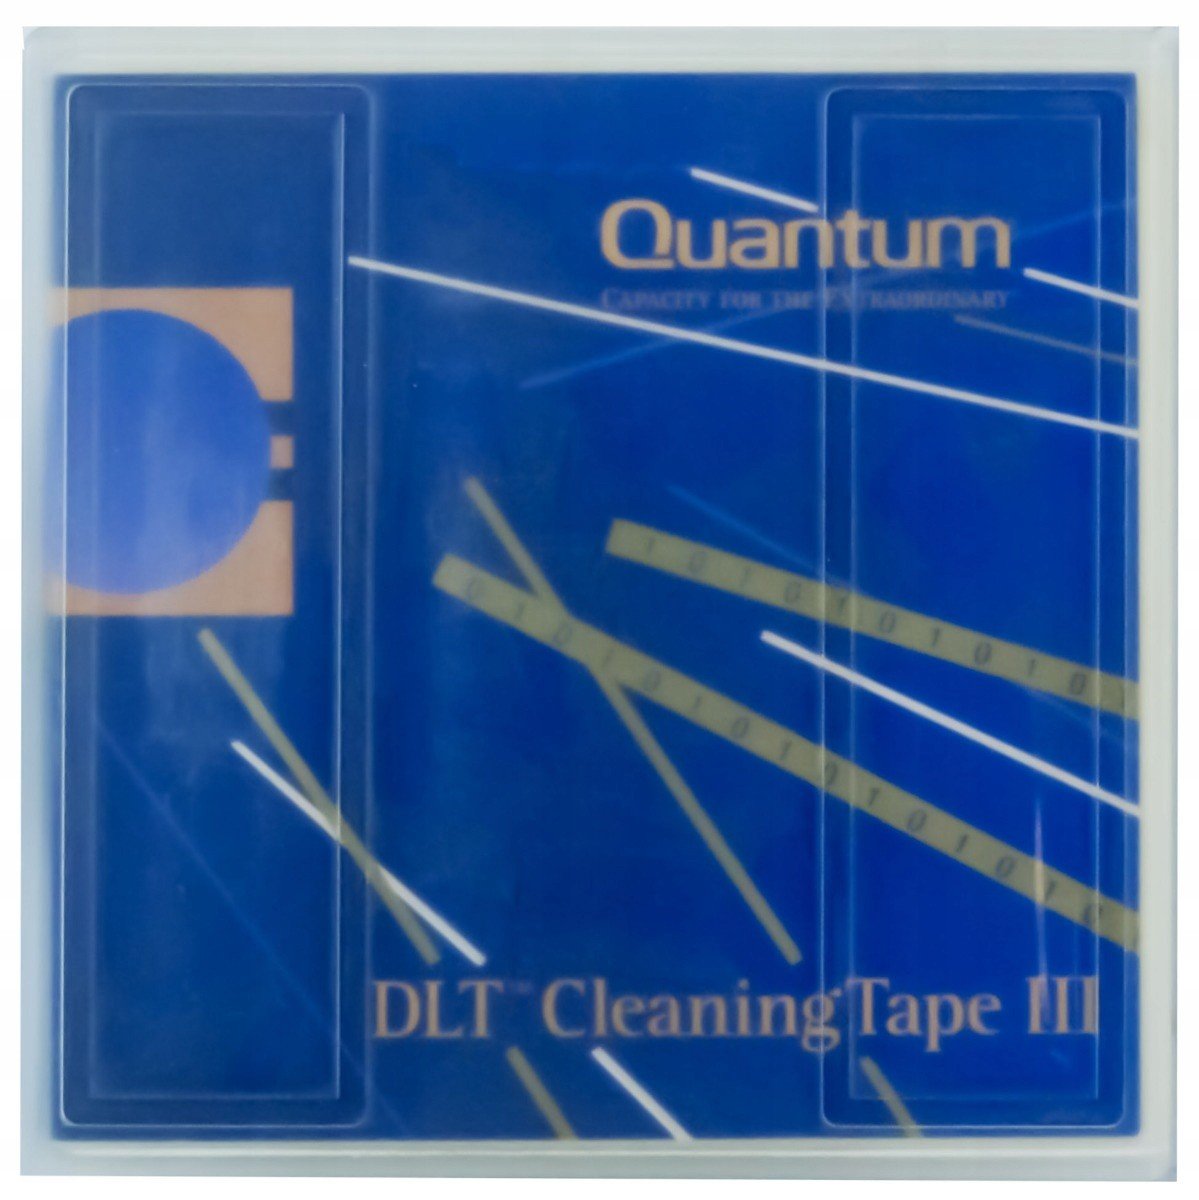 Quantum THXHC-02 Dlt Čistící Páska III